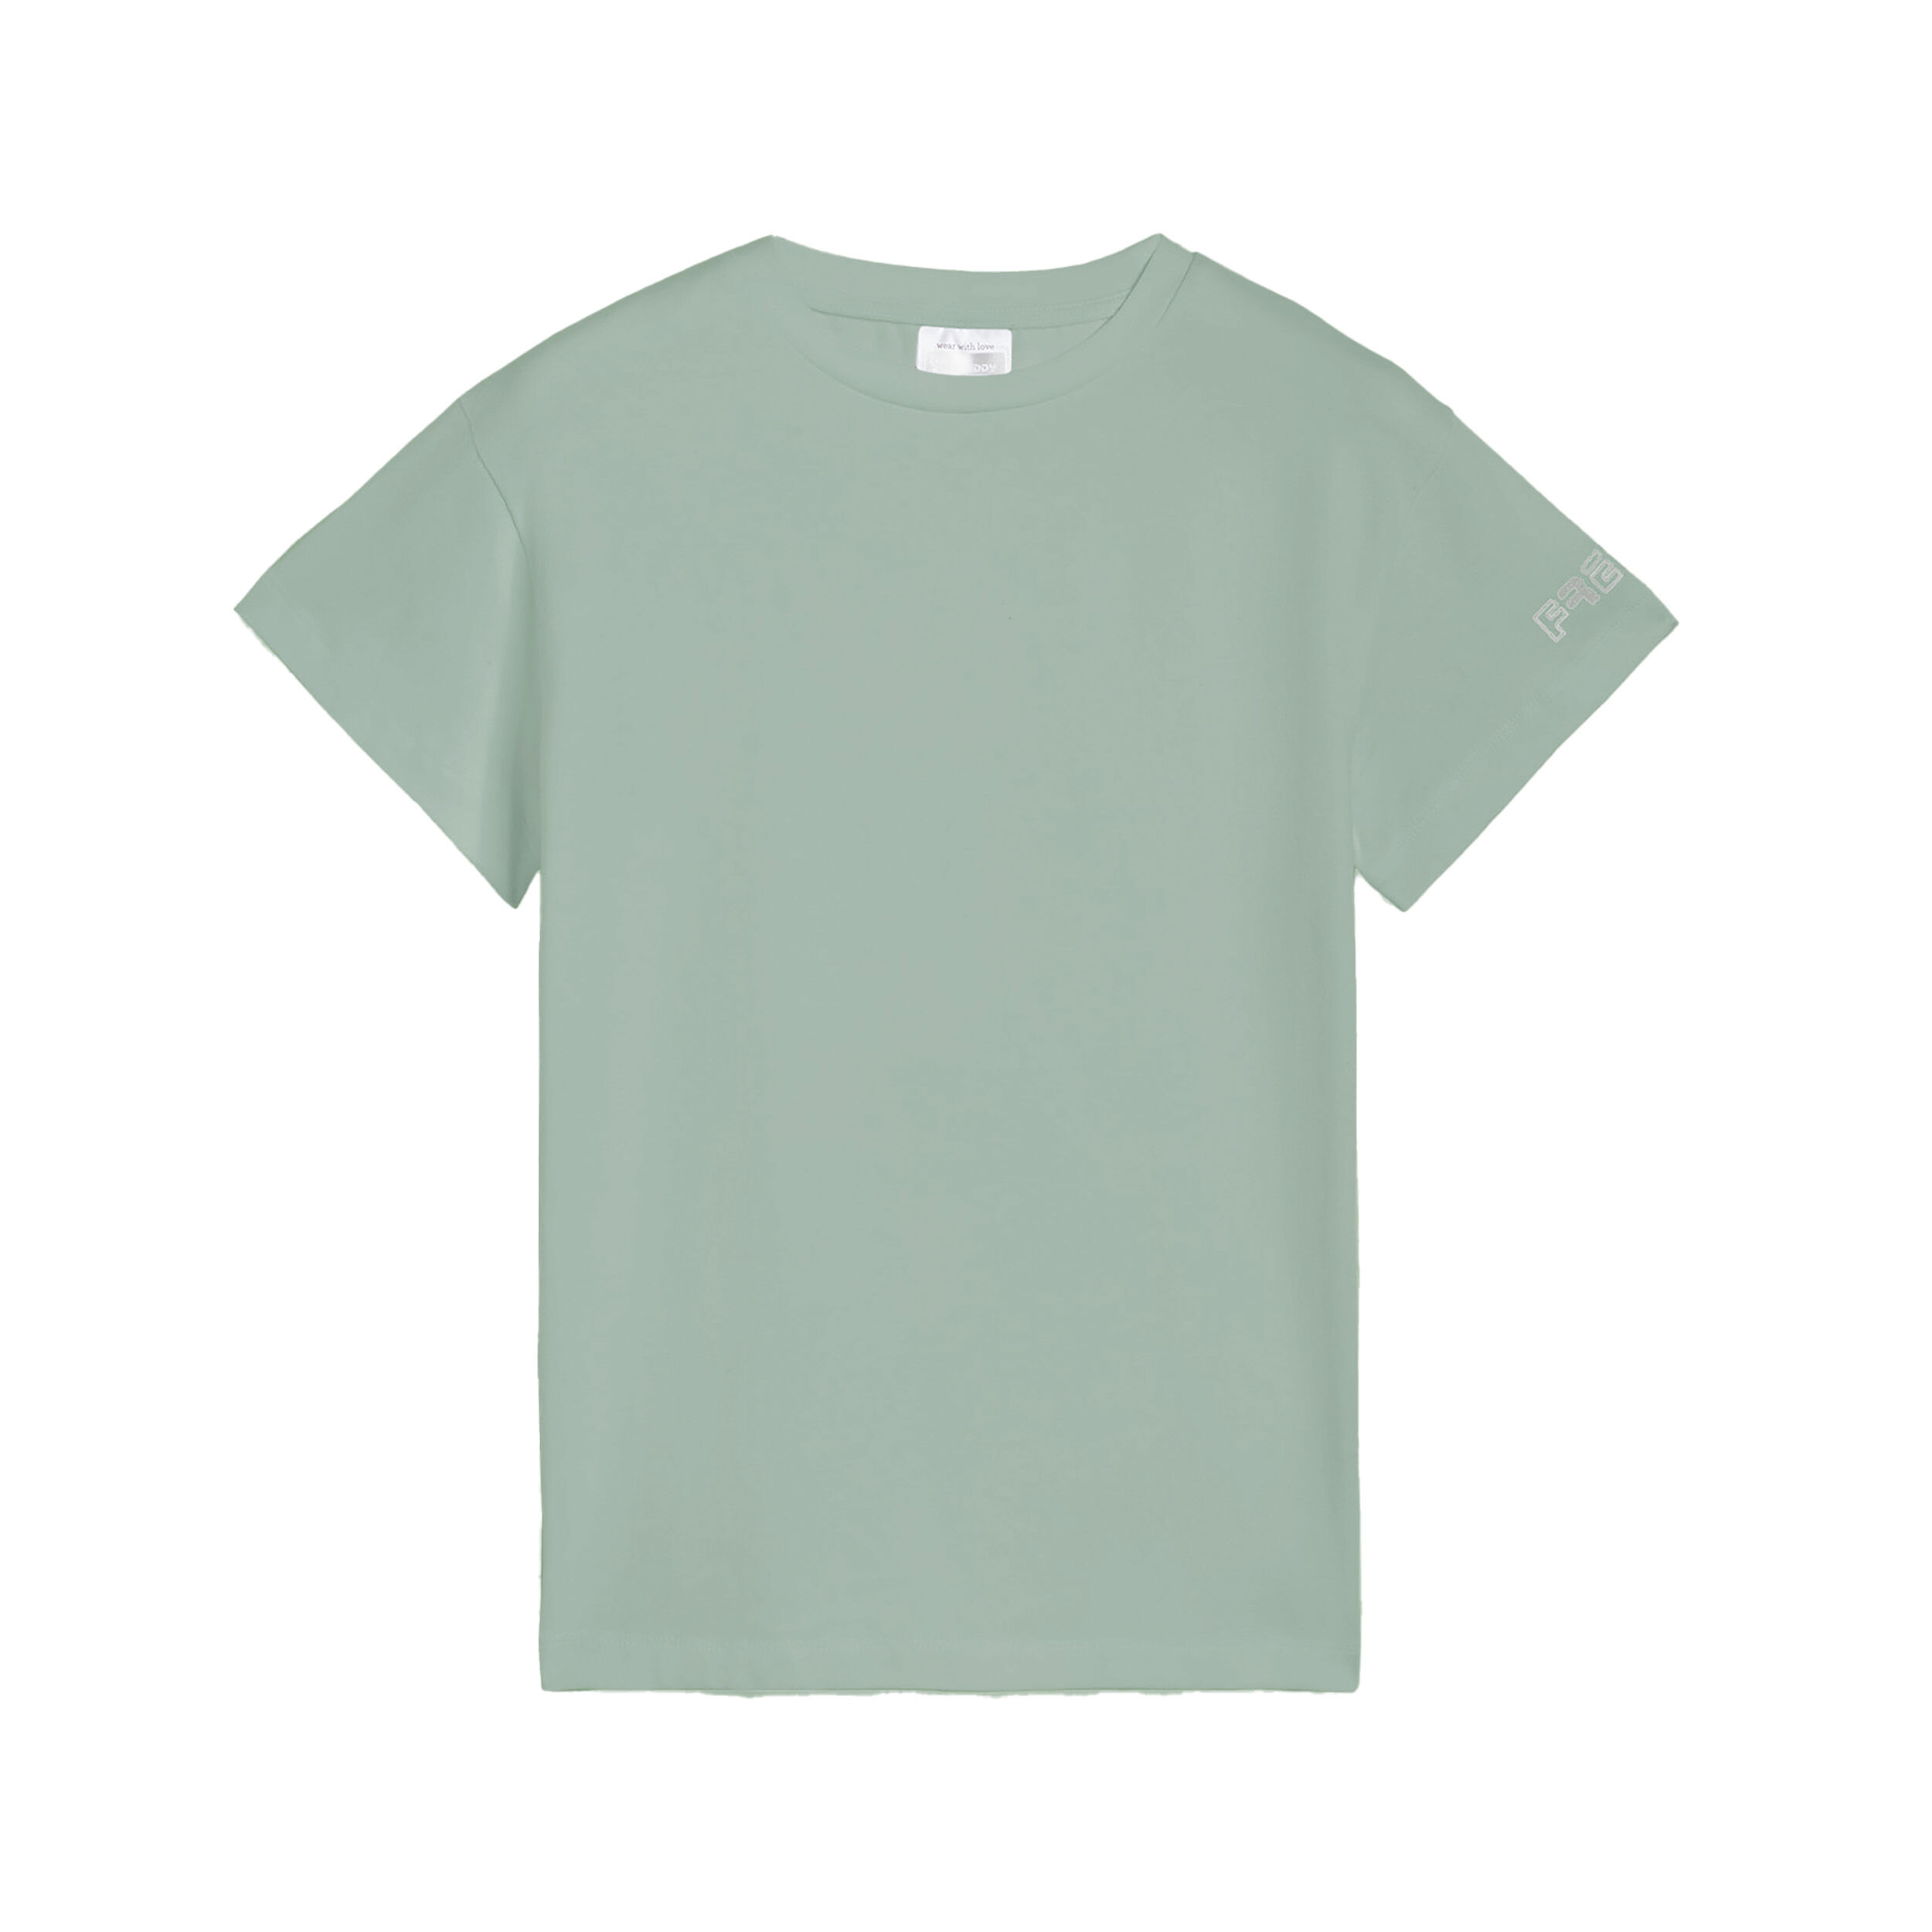 Freddy T-shirt da bambina regular fit con logo sulla manica Verde Militare Junior 6 Anni